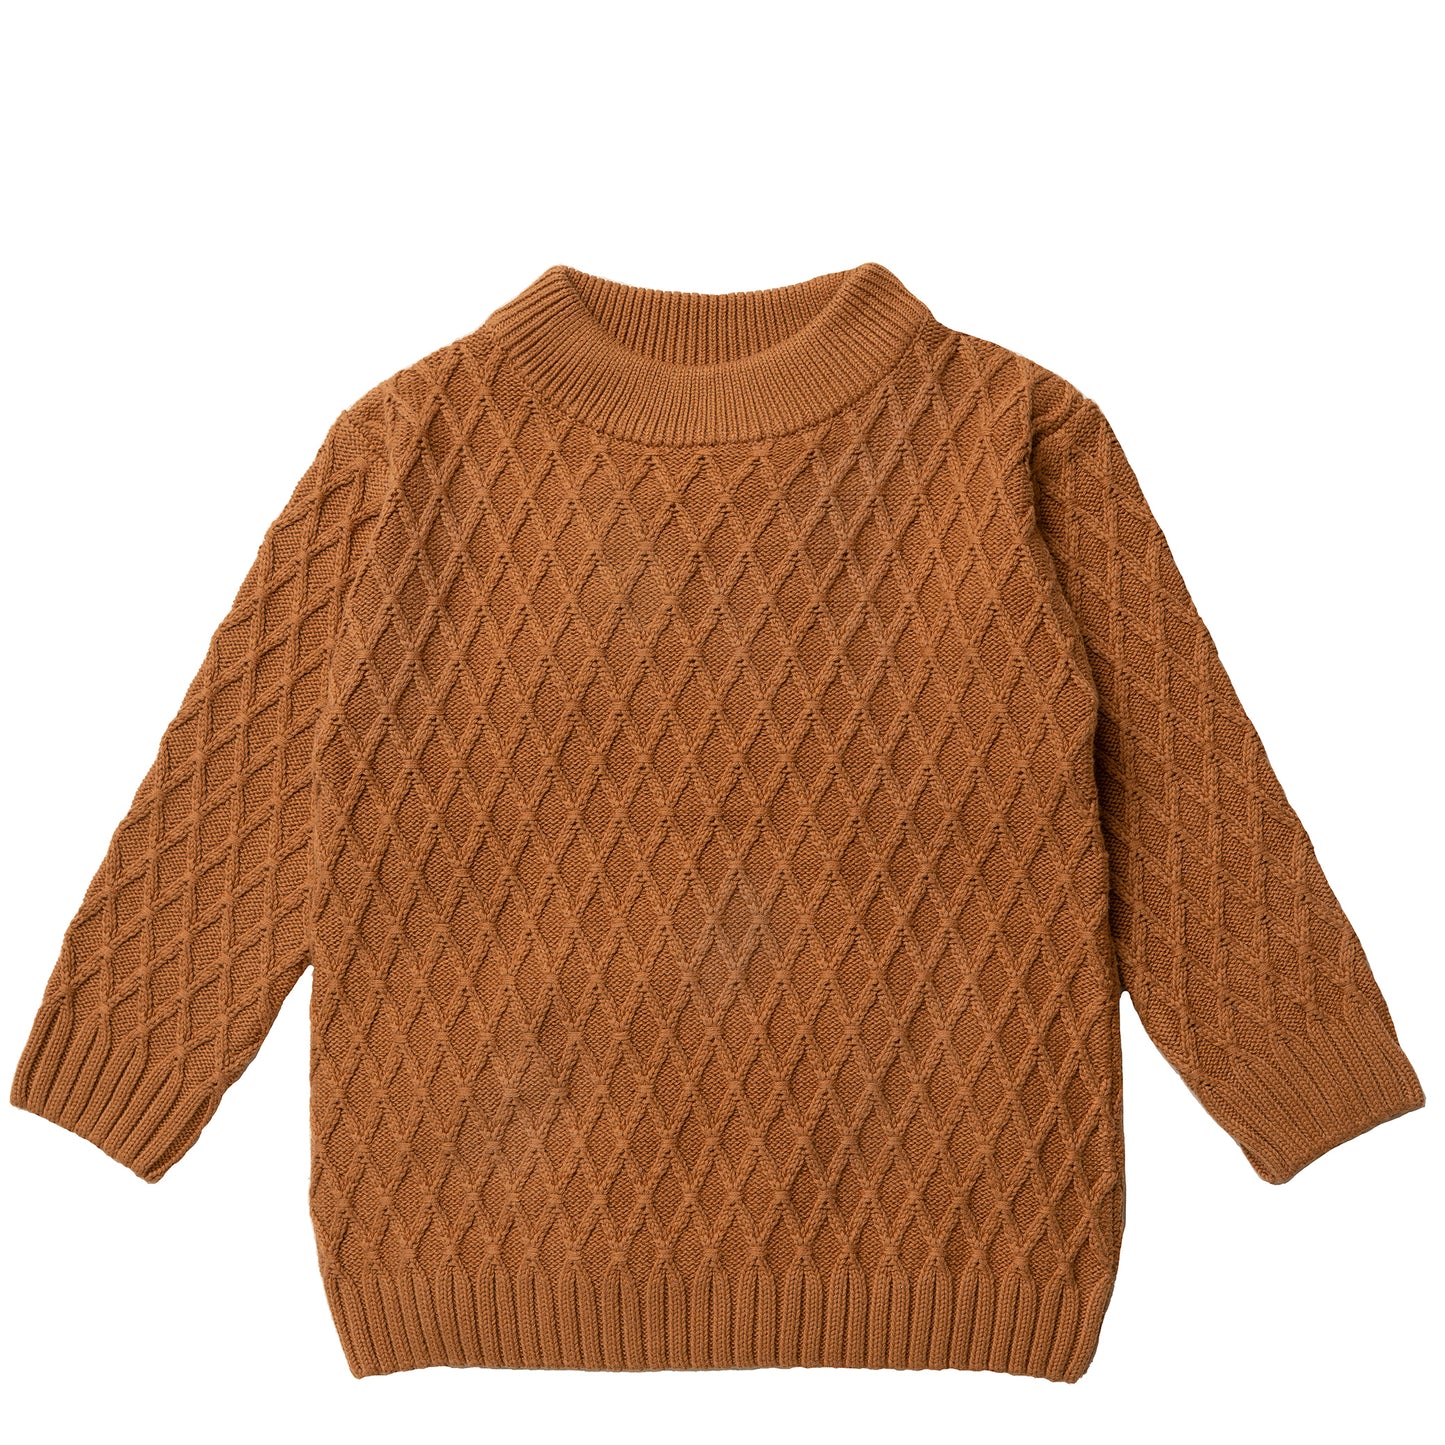 Hanevild Theodor blouse, cinnamon Blouses Golden brown